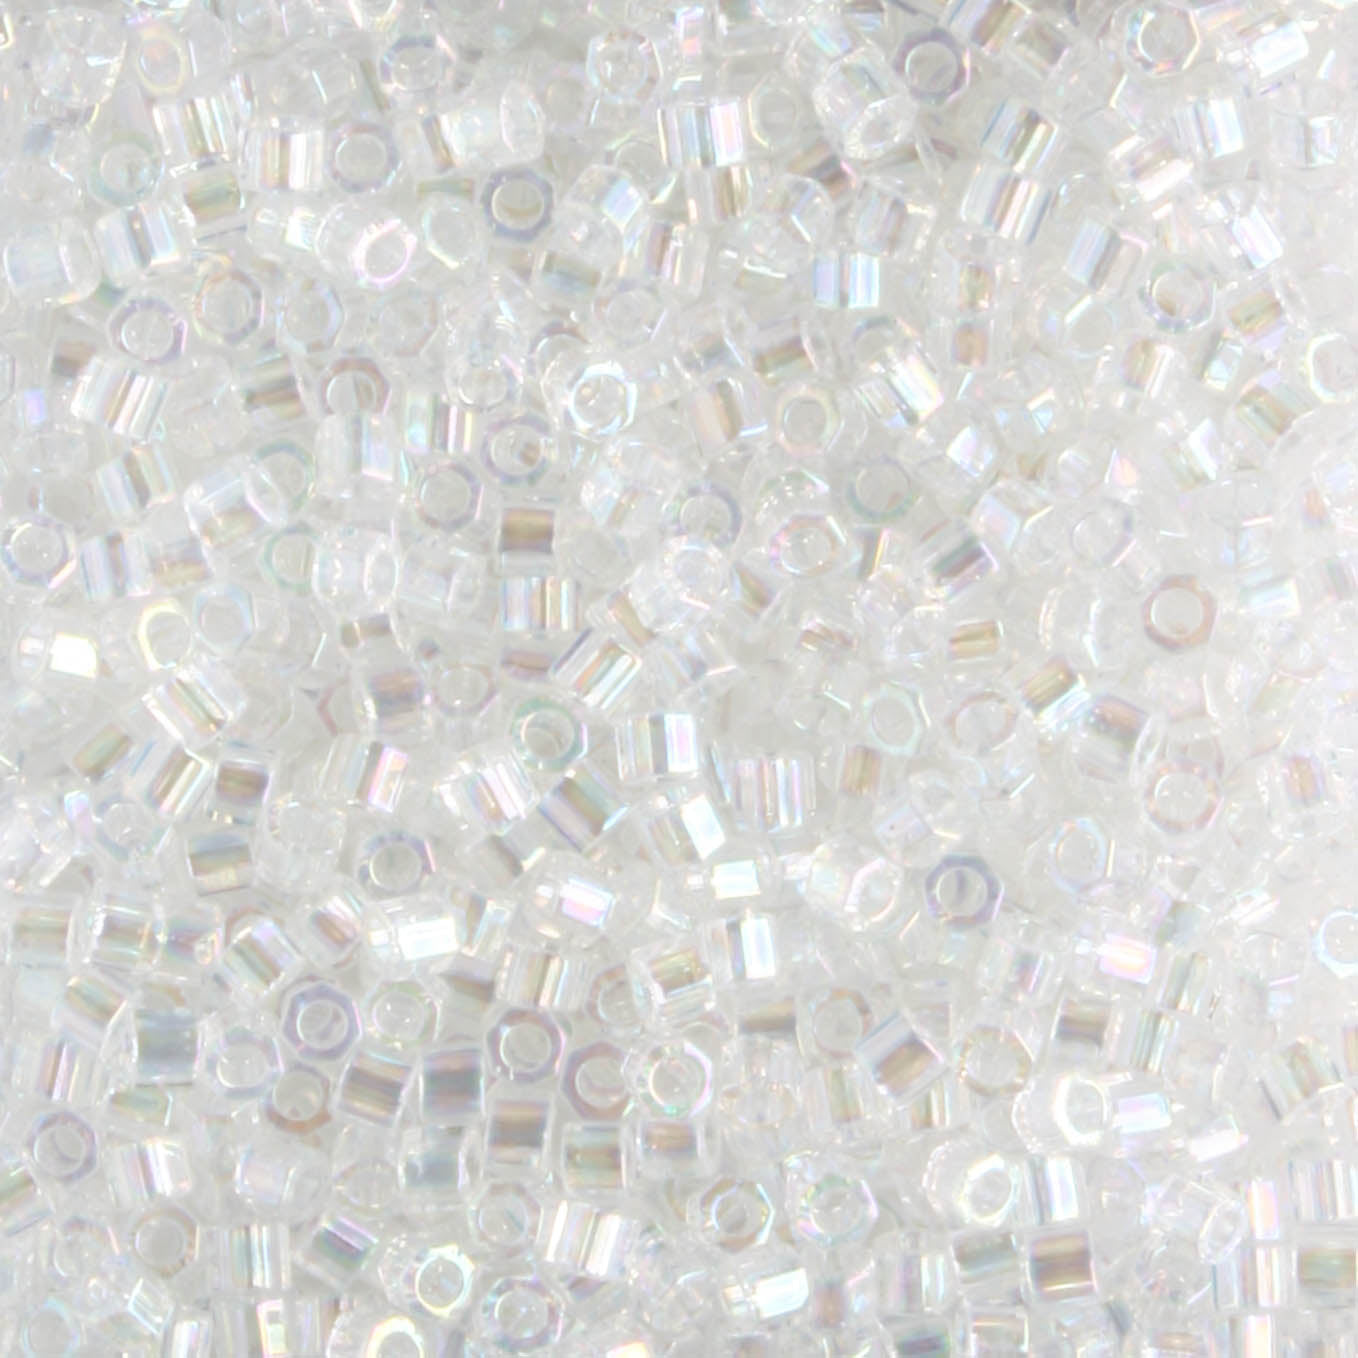 DBH0051 Transparent Rainbow Crystal - 5 grams